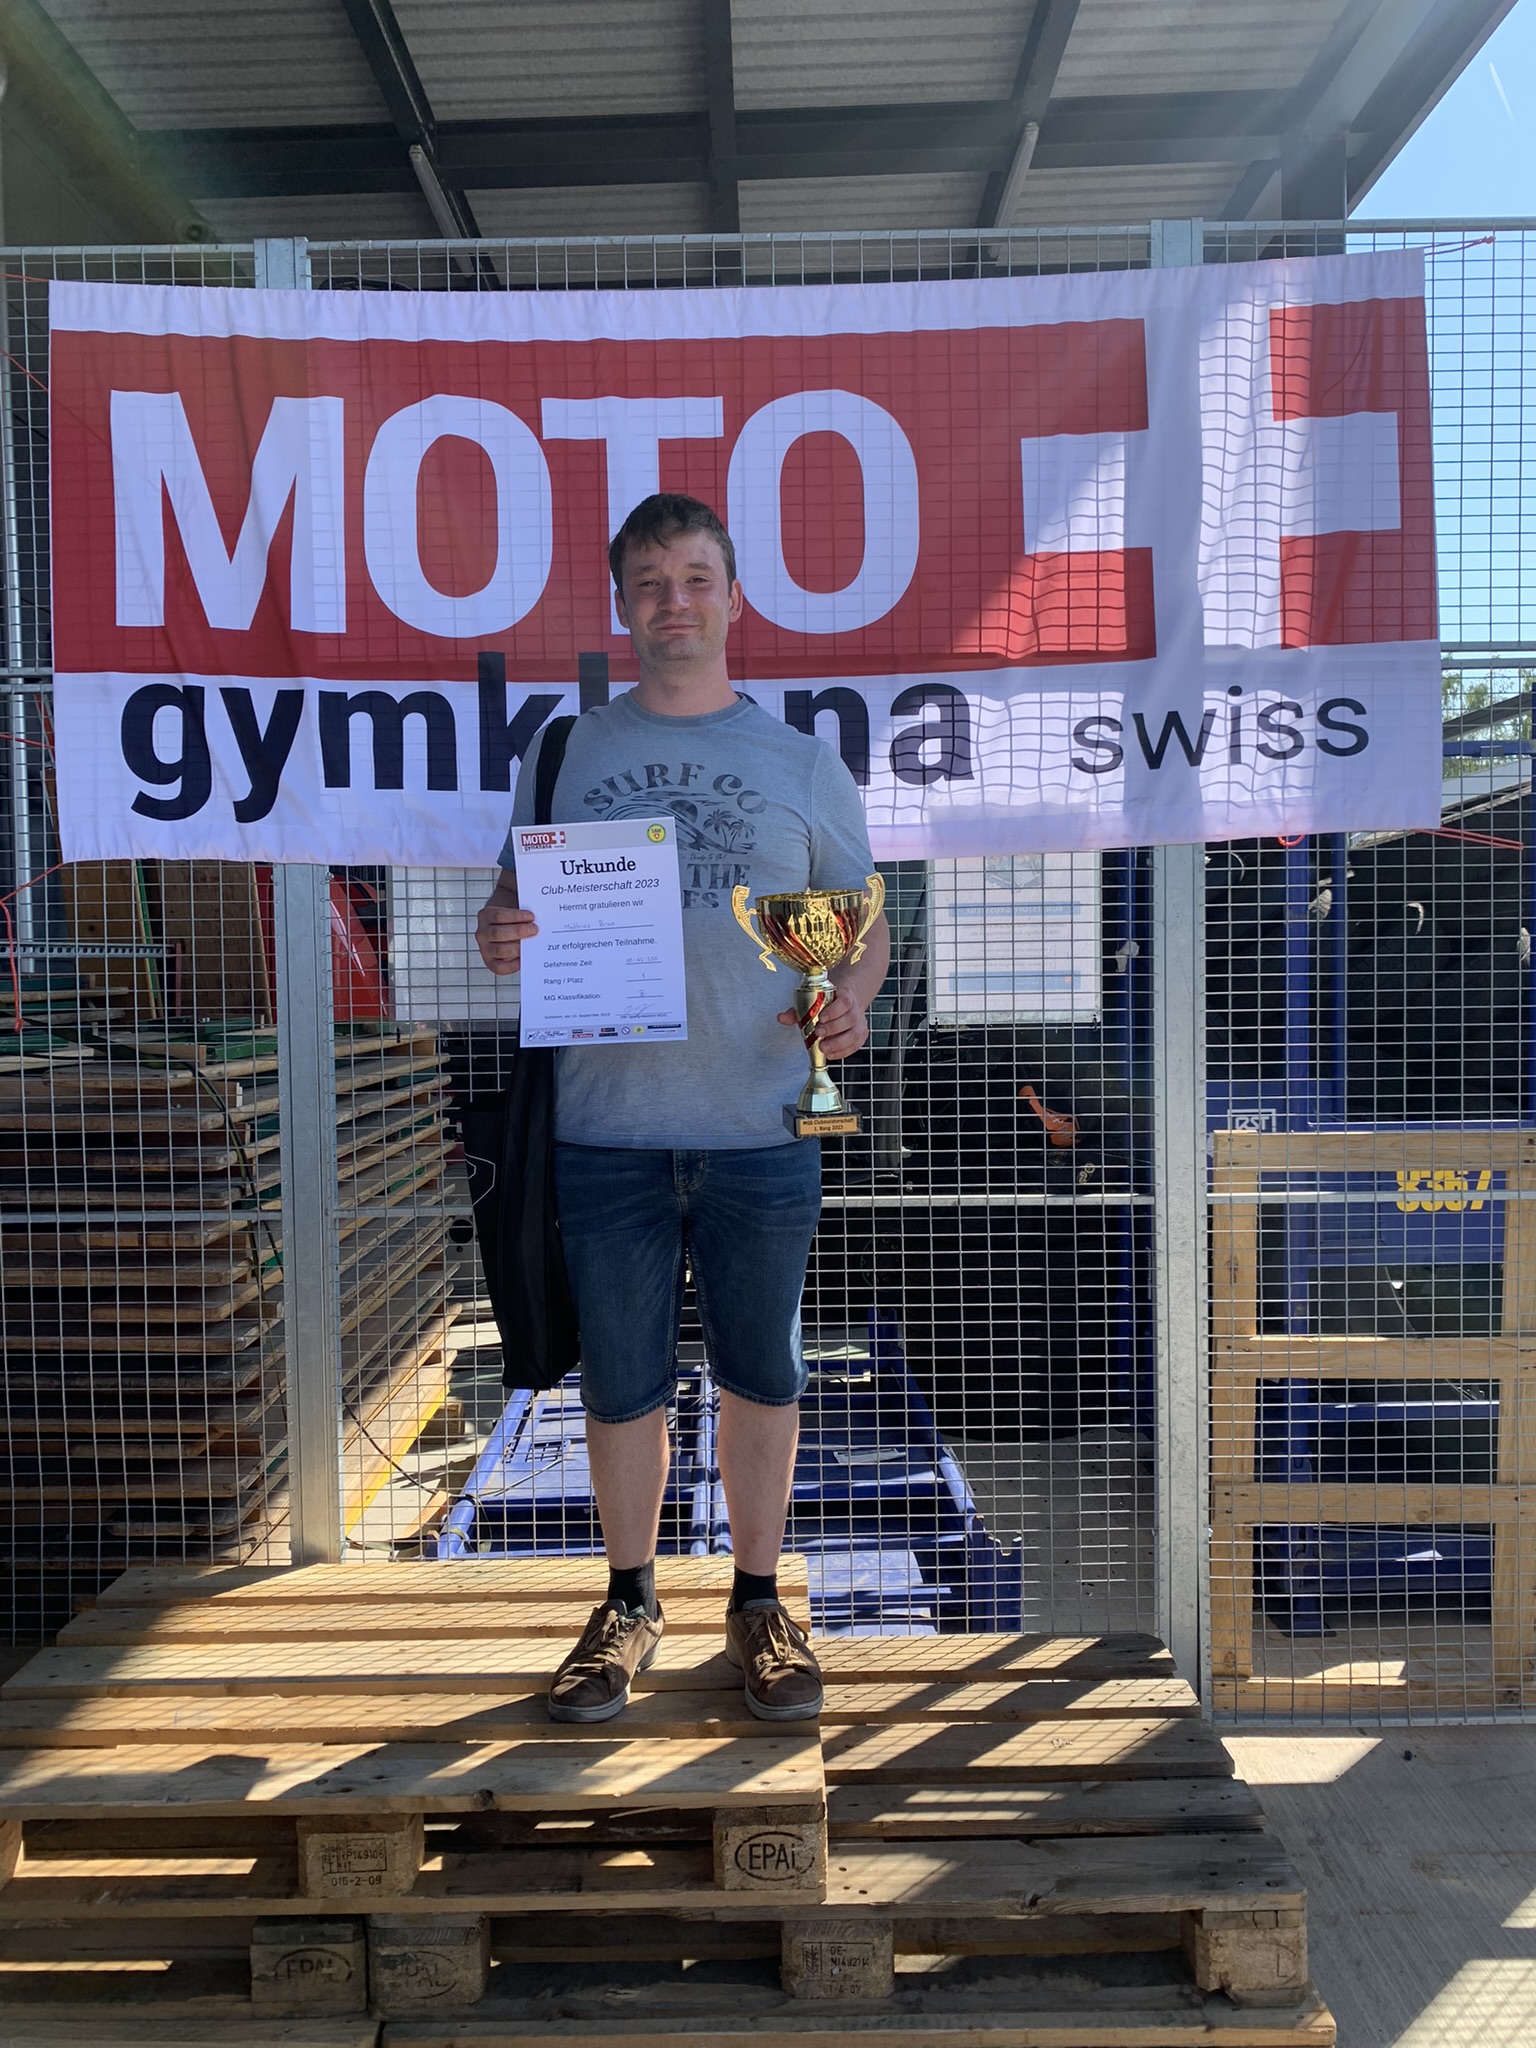 Moto Gymkhana Schwiss - 1. Platz Mathias Brax